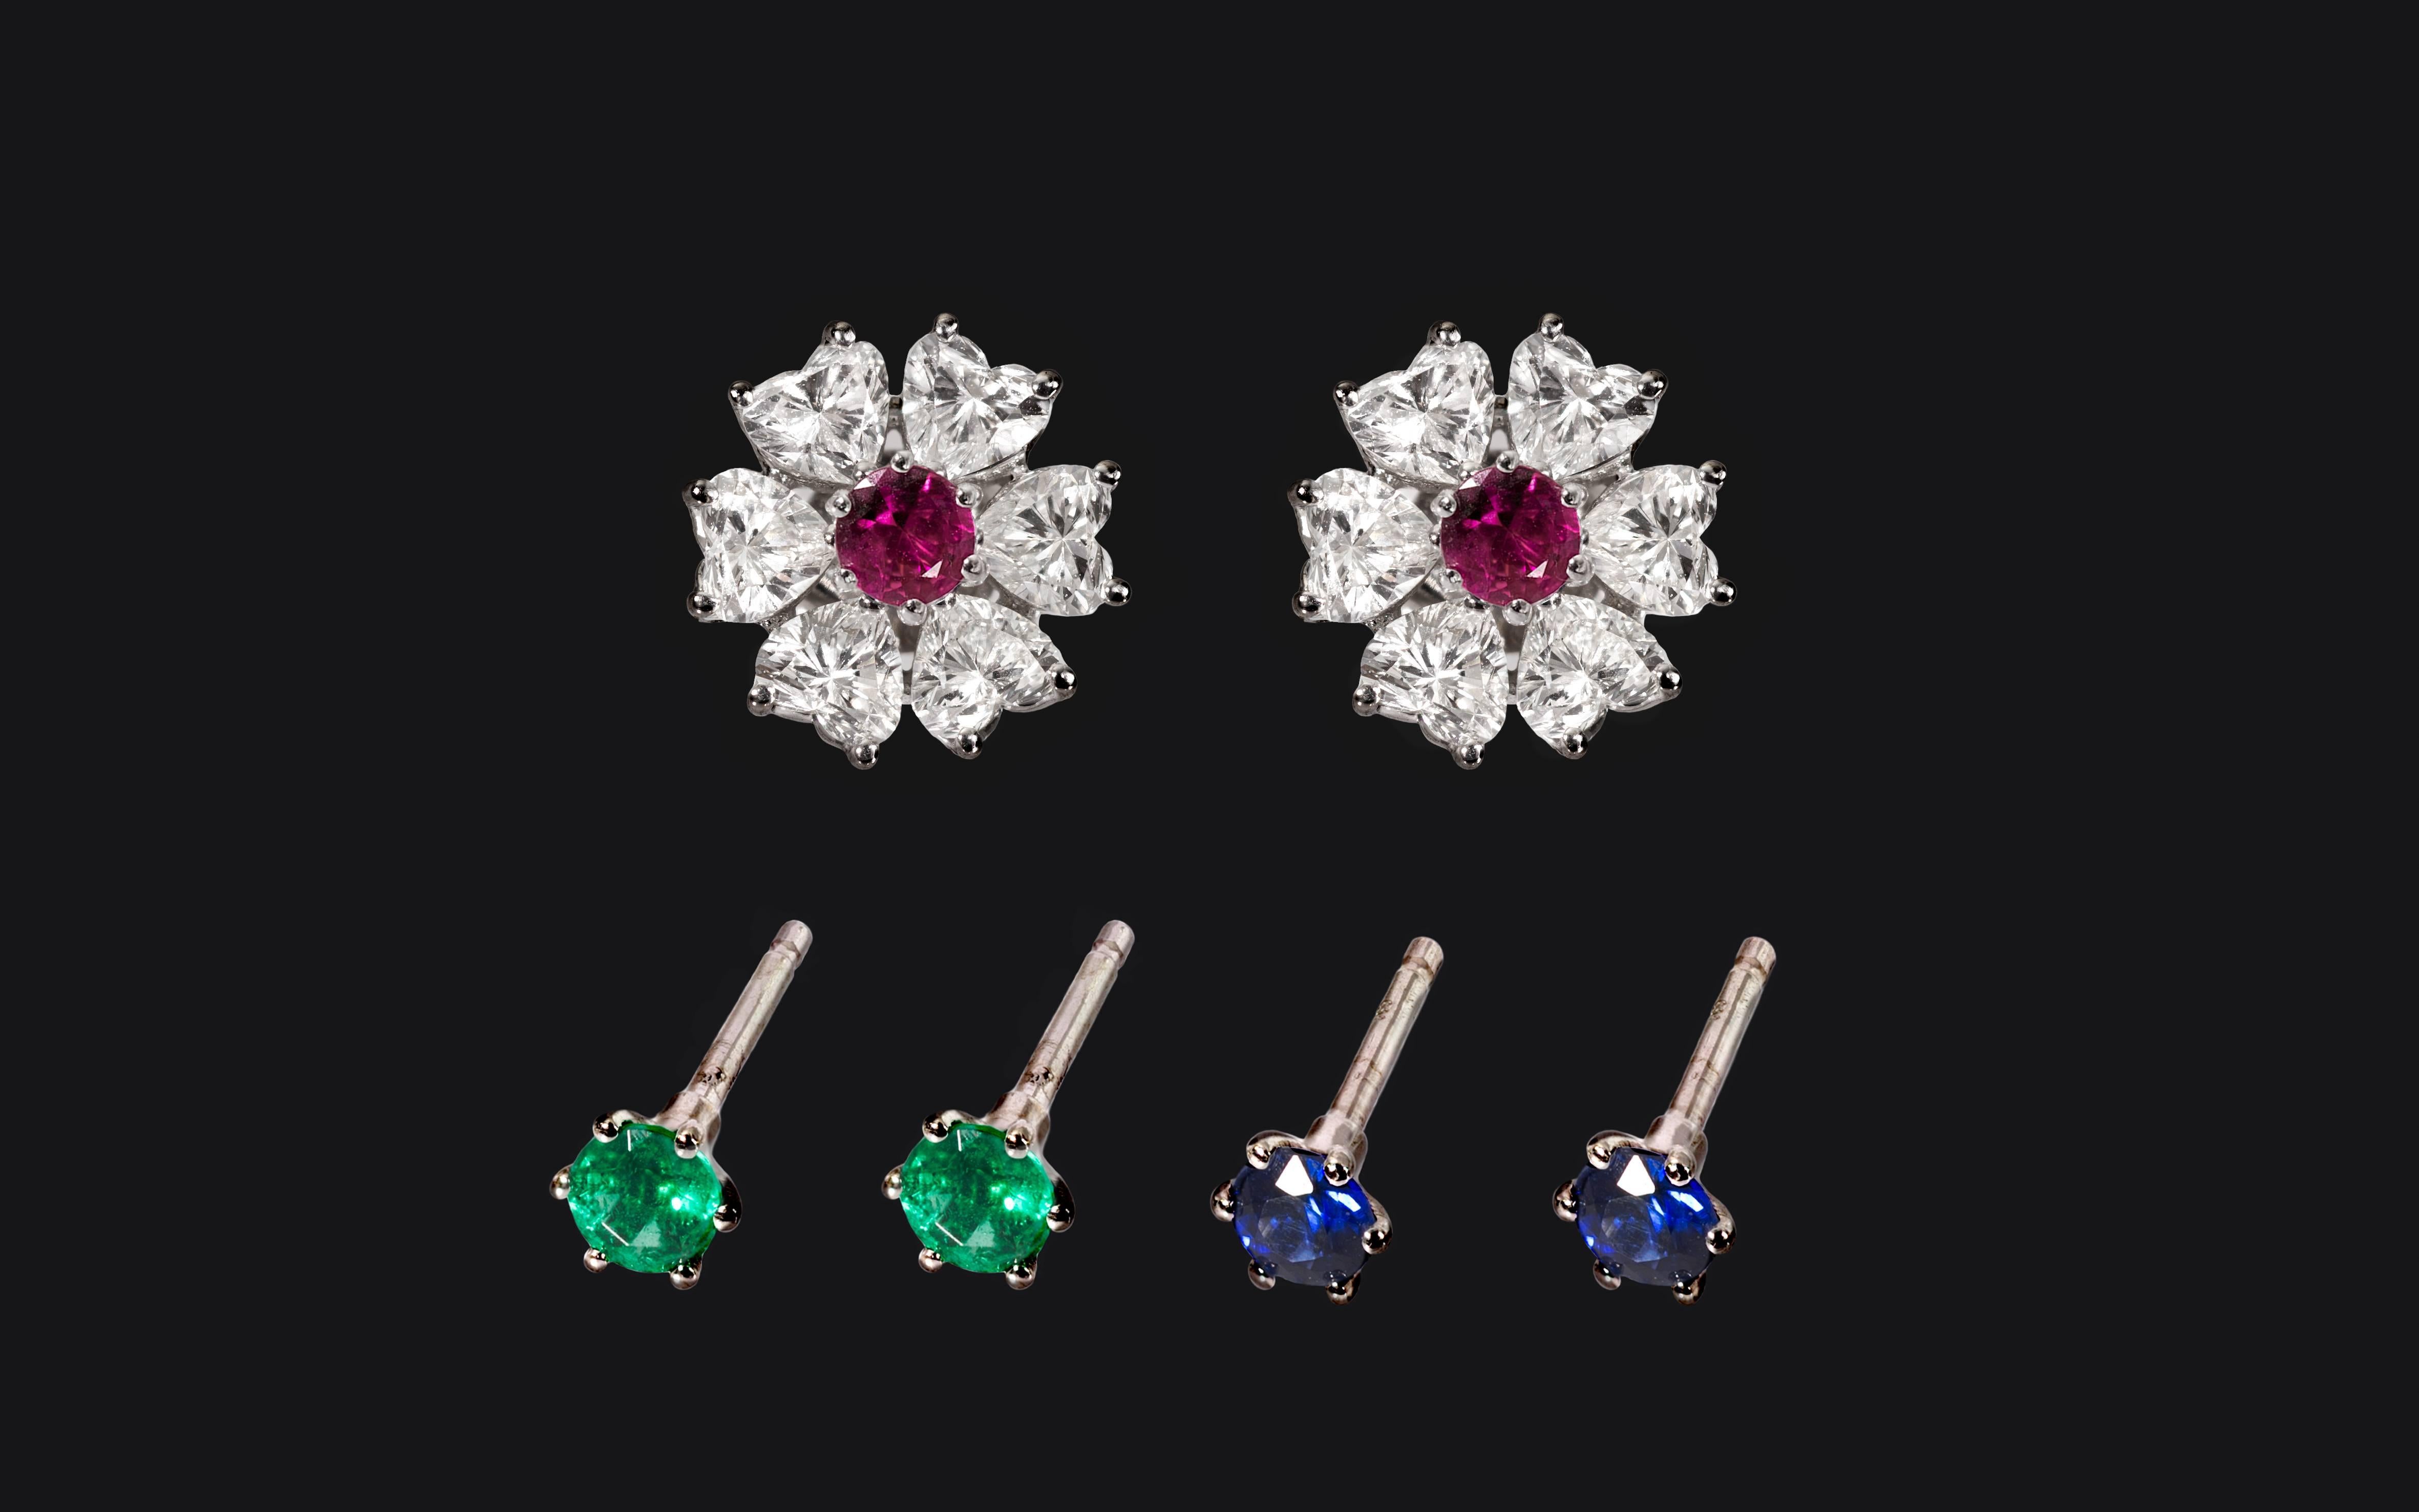 Floral Interchangeable Diamond Earrings Set, EGL Certified 2